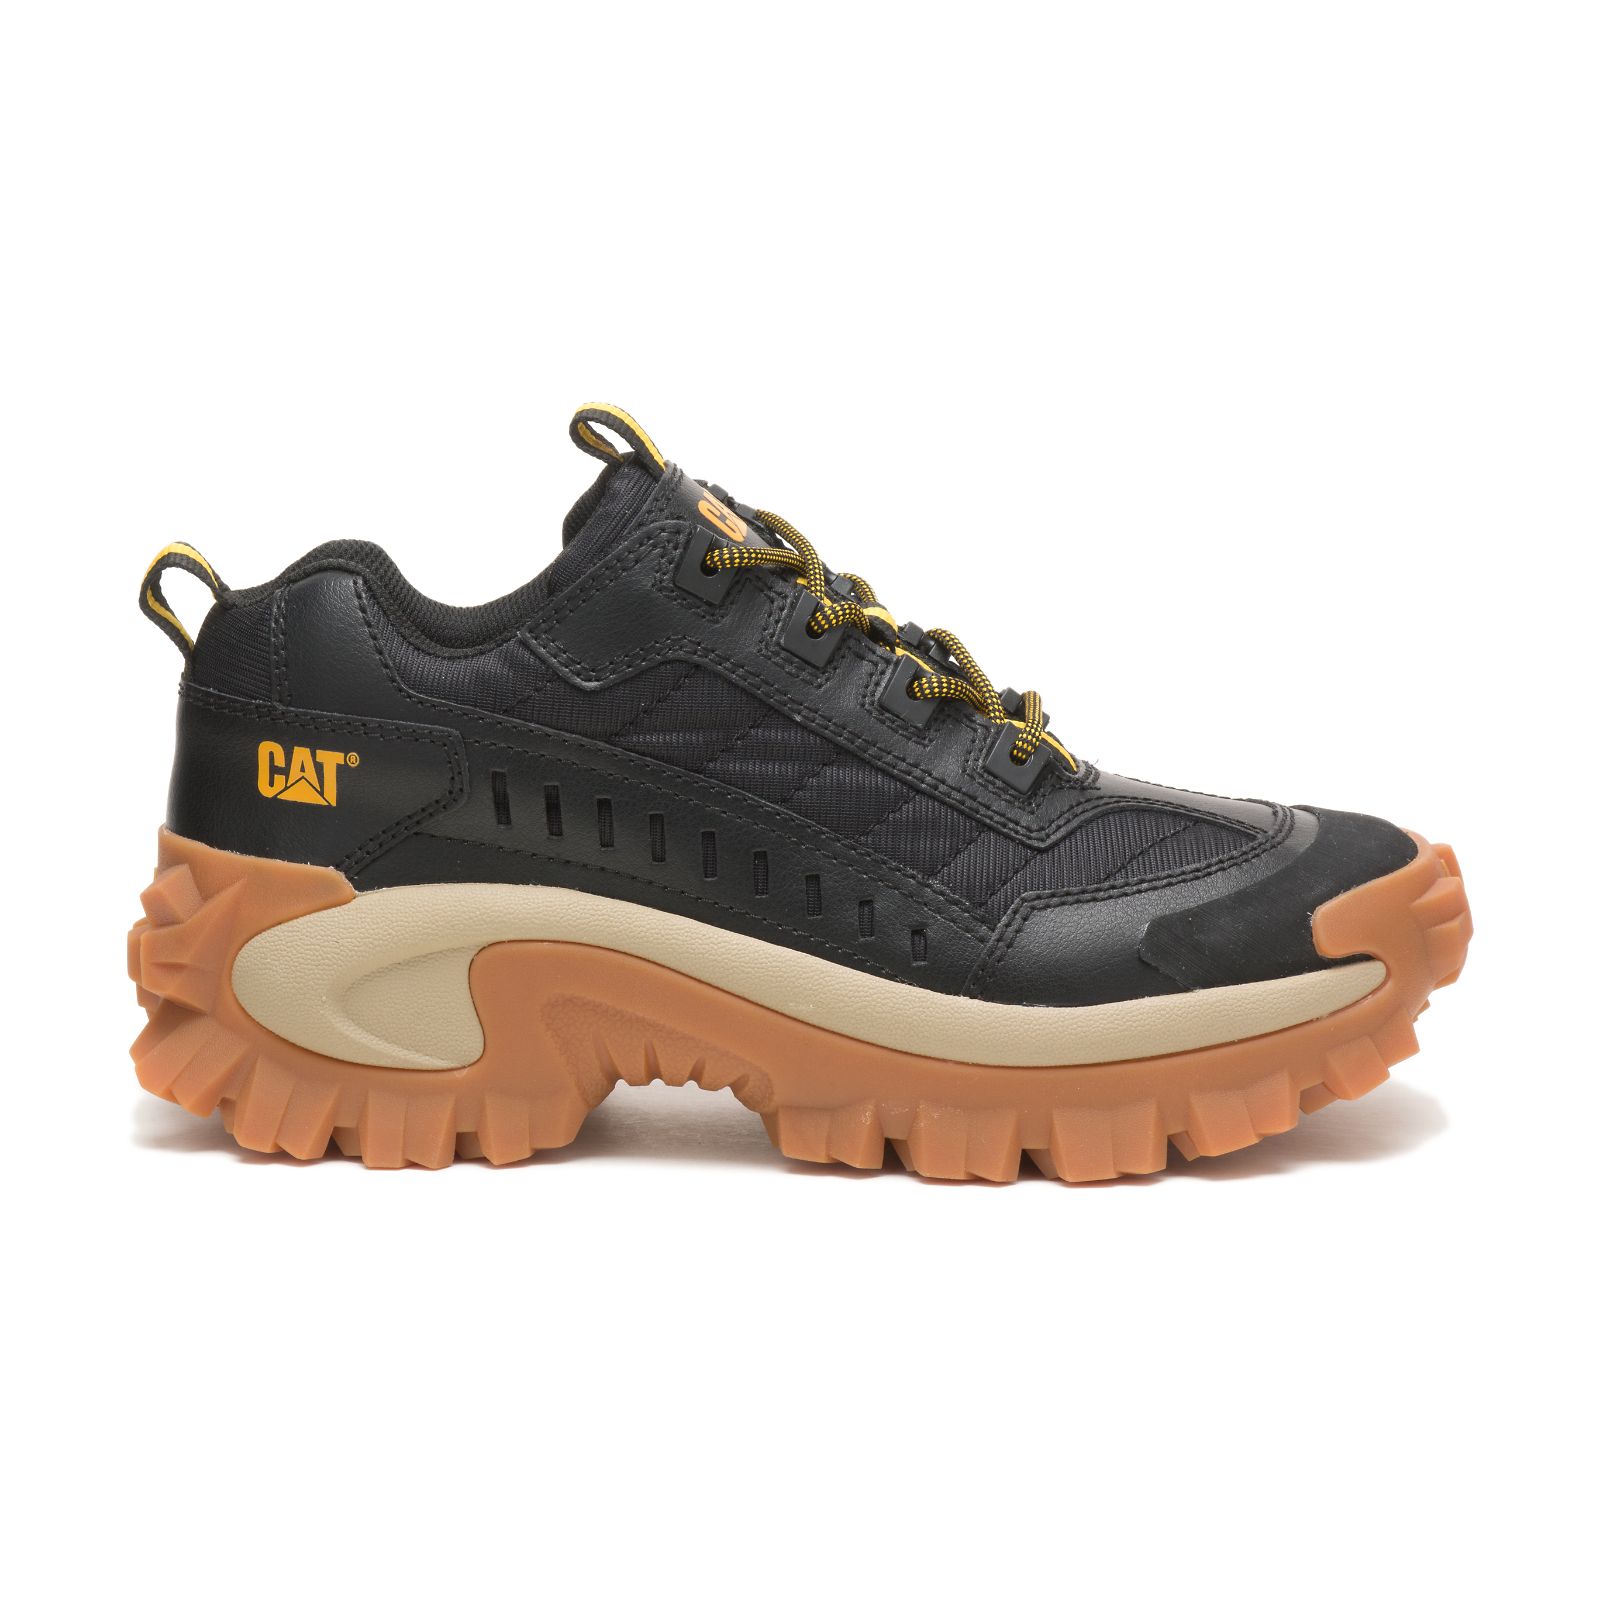 Caterpillar Intruder Philippines - Mens Casual Shoes - Black 89106SHUM